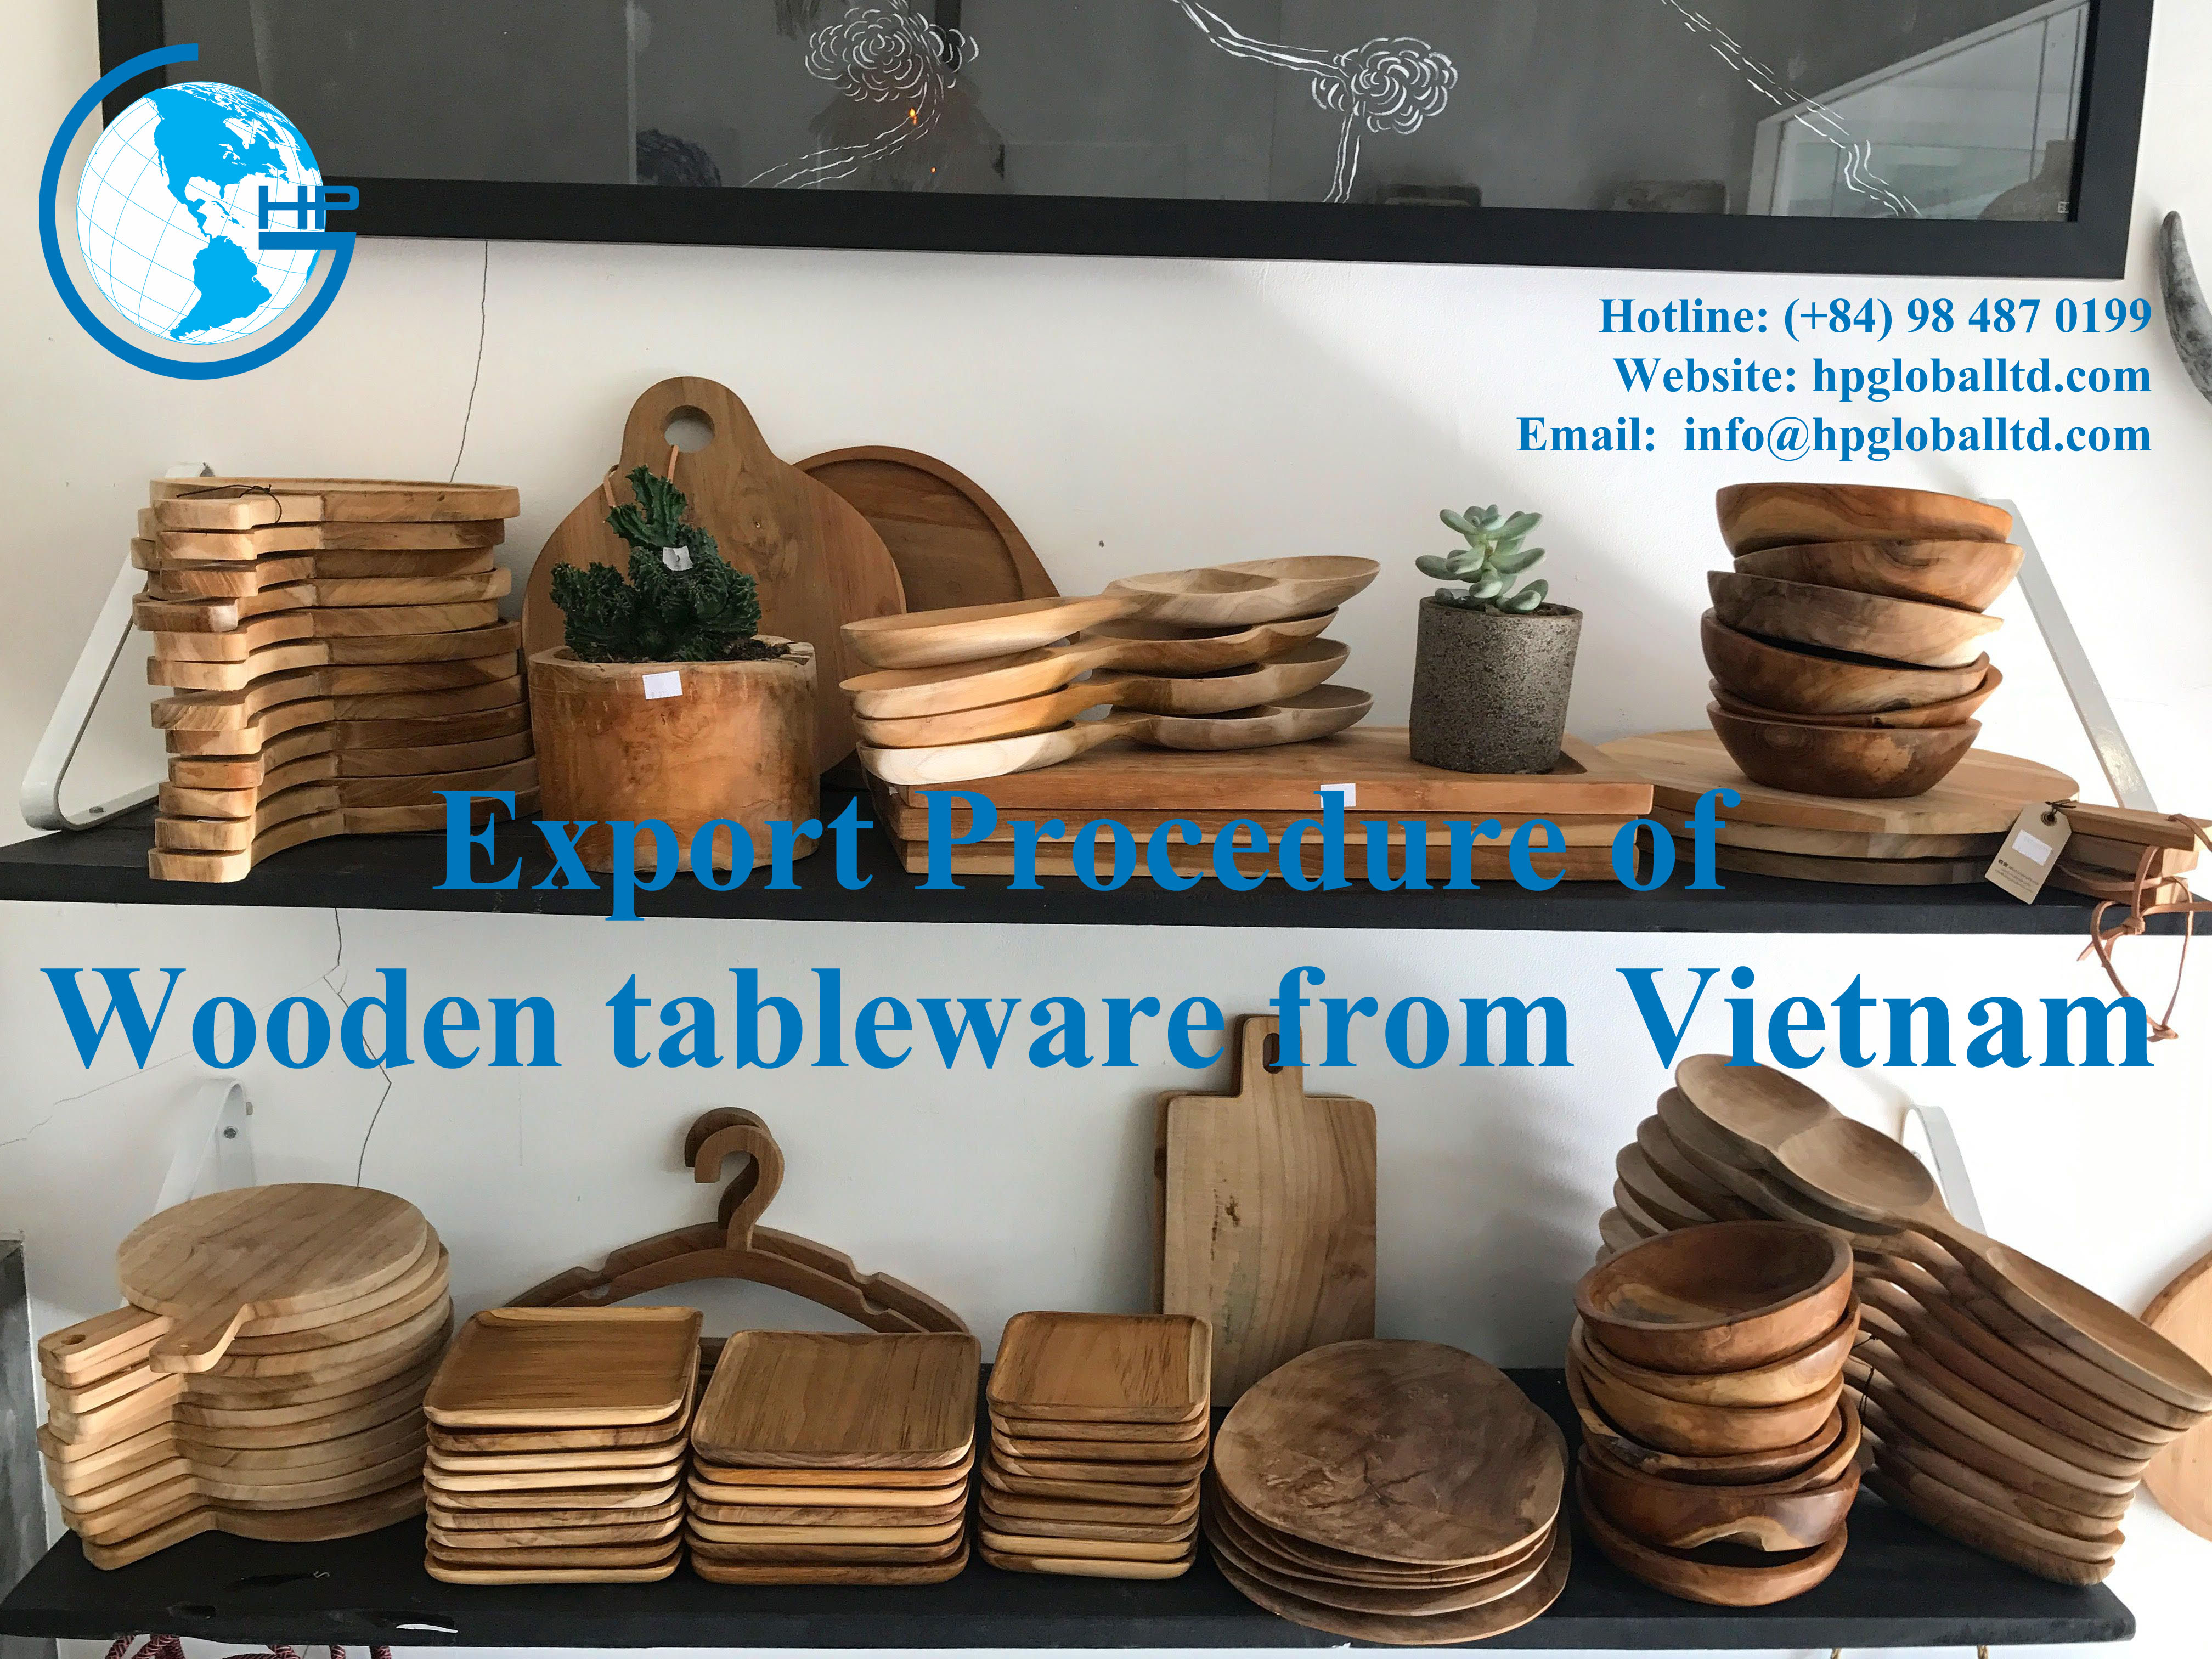 Export-Procedure-of-Wooden-tableware-from-Vietnam